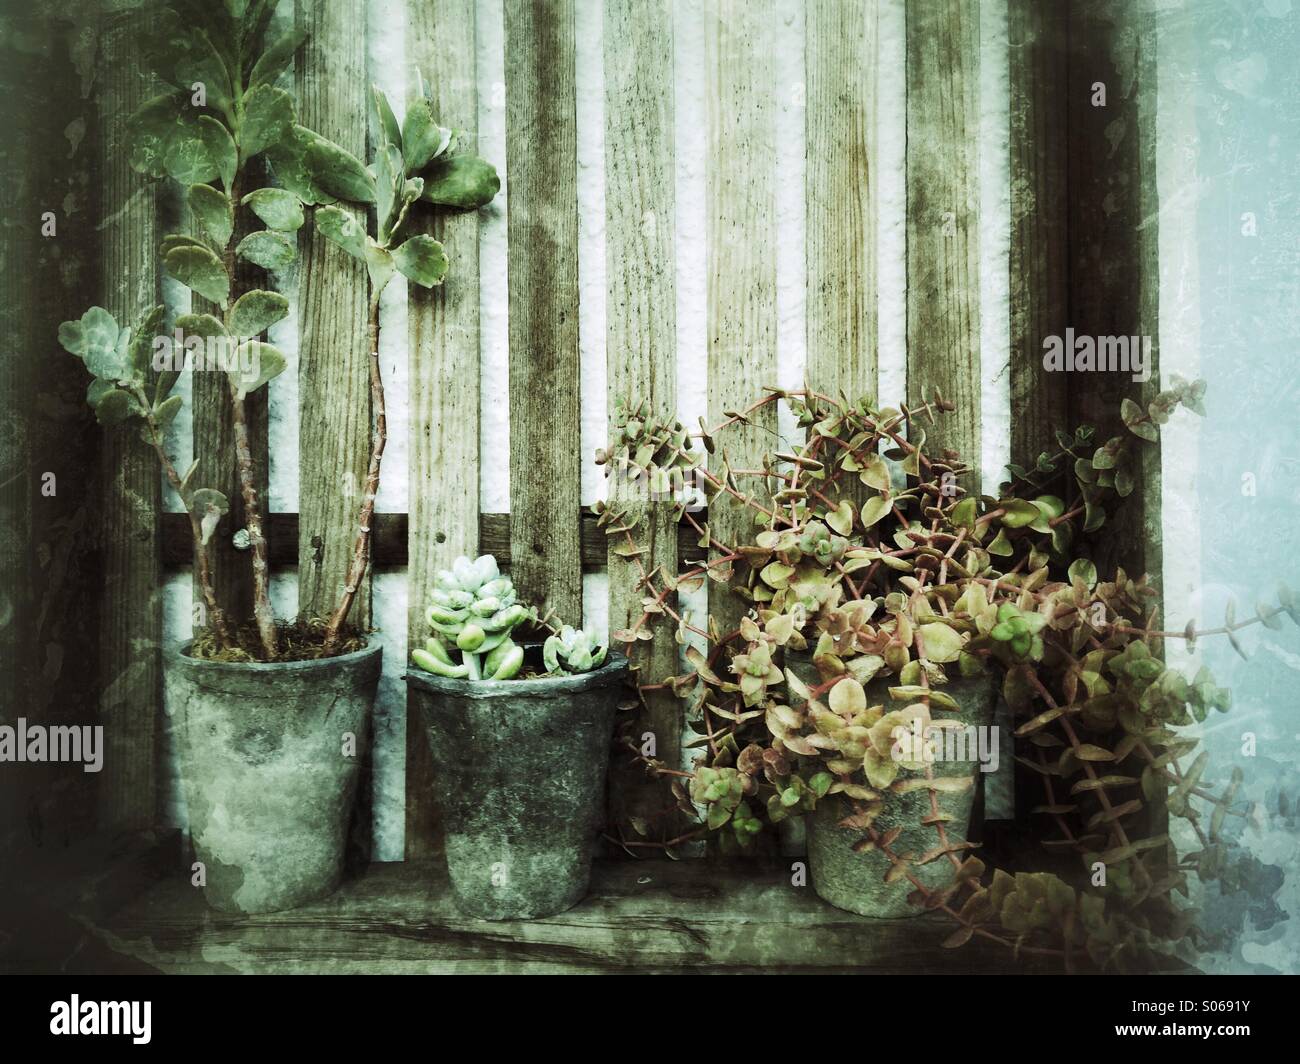 succulents-S0691Y.jpg